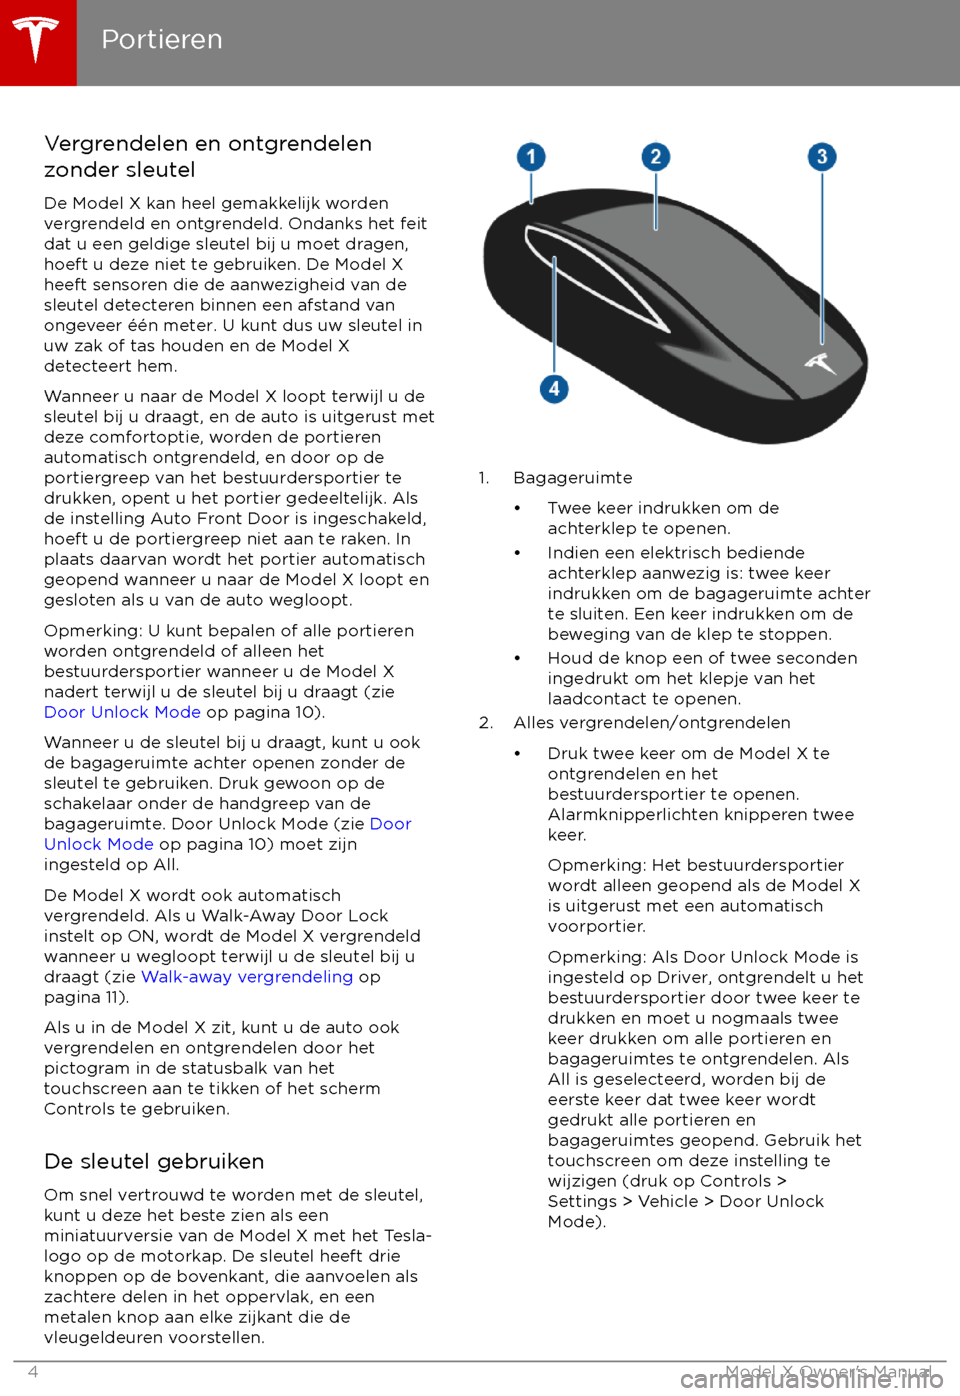 TESLA MODEL X 2017  Handleiding (in Dutch) Vergrendelen en ontgrendelen
zonder sleutel
De Model X kan heel gemakkelijk worden
vergrendeld en ontgrendeld. Ondanks het feit
dat u een geldige sleutel bij u moet dragen,
hoeft u deze niet te gebrui